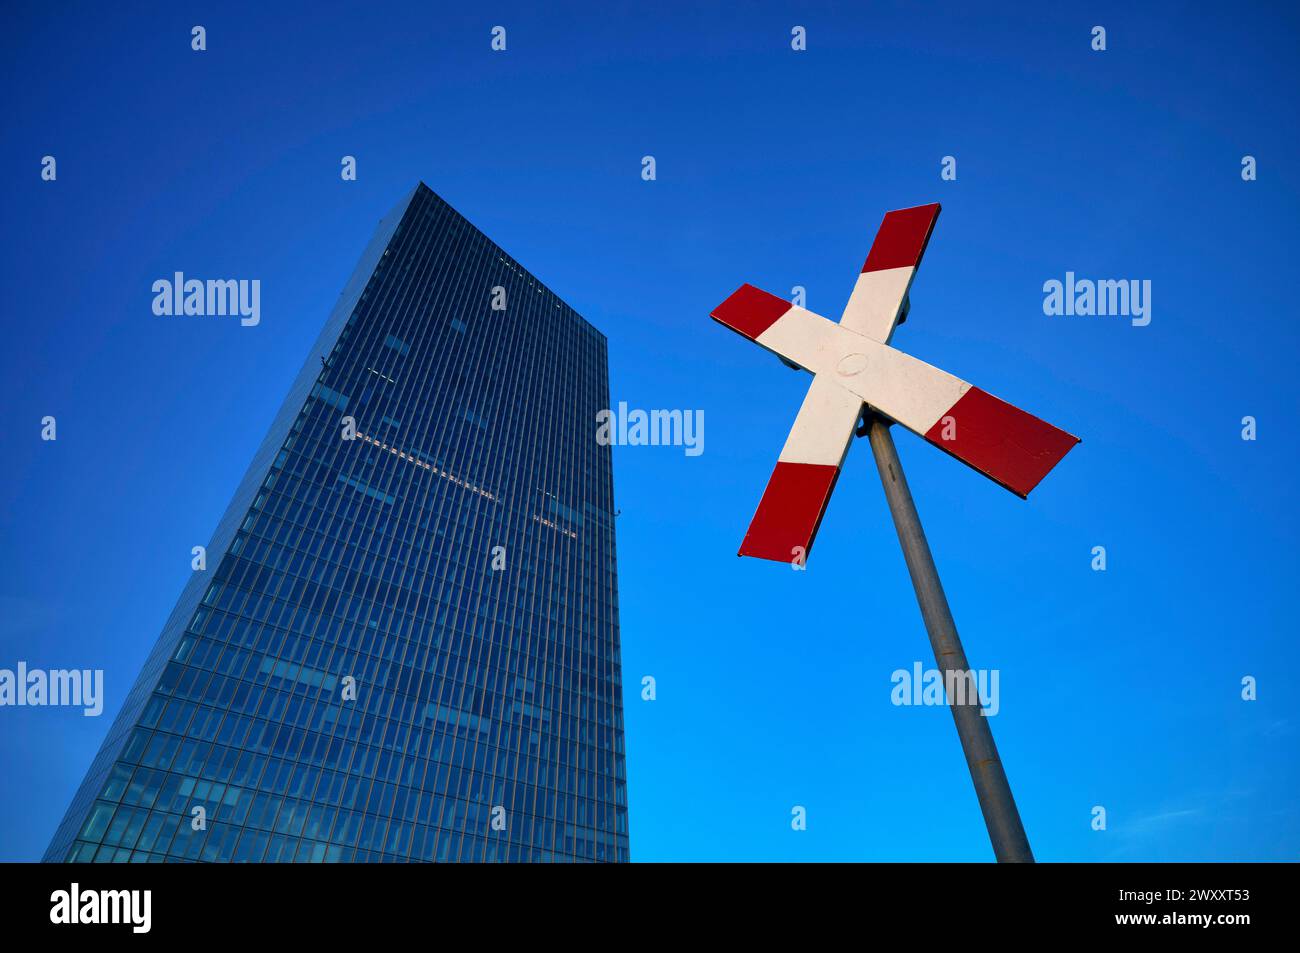 Croix de Saint-André, panneau de rue, Banque centrale européenne, BCE, Osthafen, Ostende, heure bleue, Francfort-sur-le-main, Hesse, Allemagne Banque D'Images